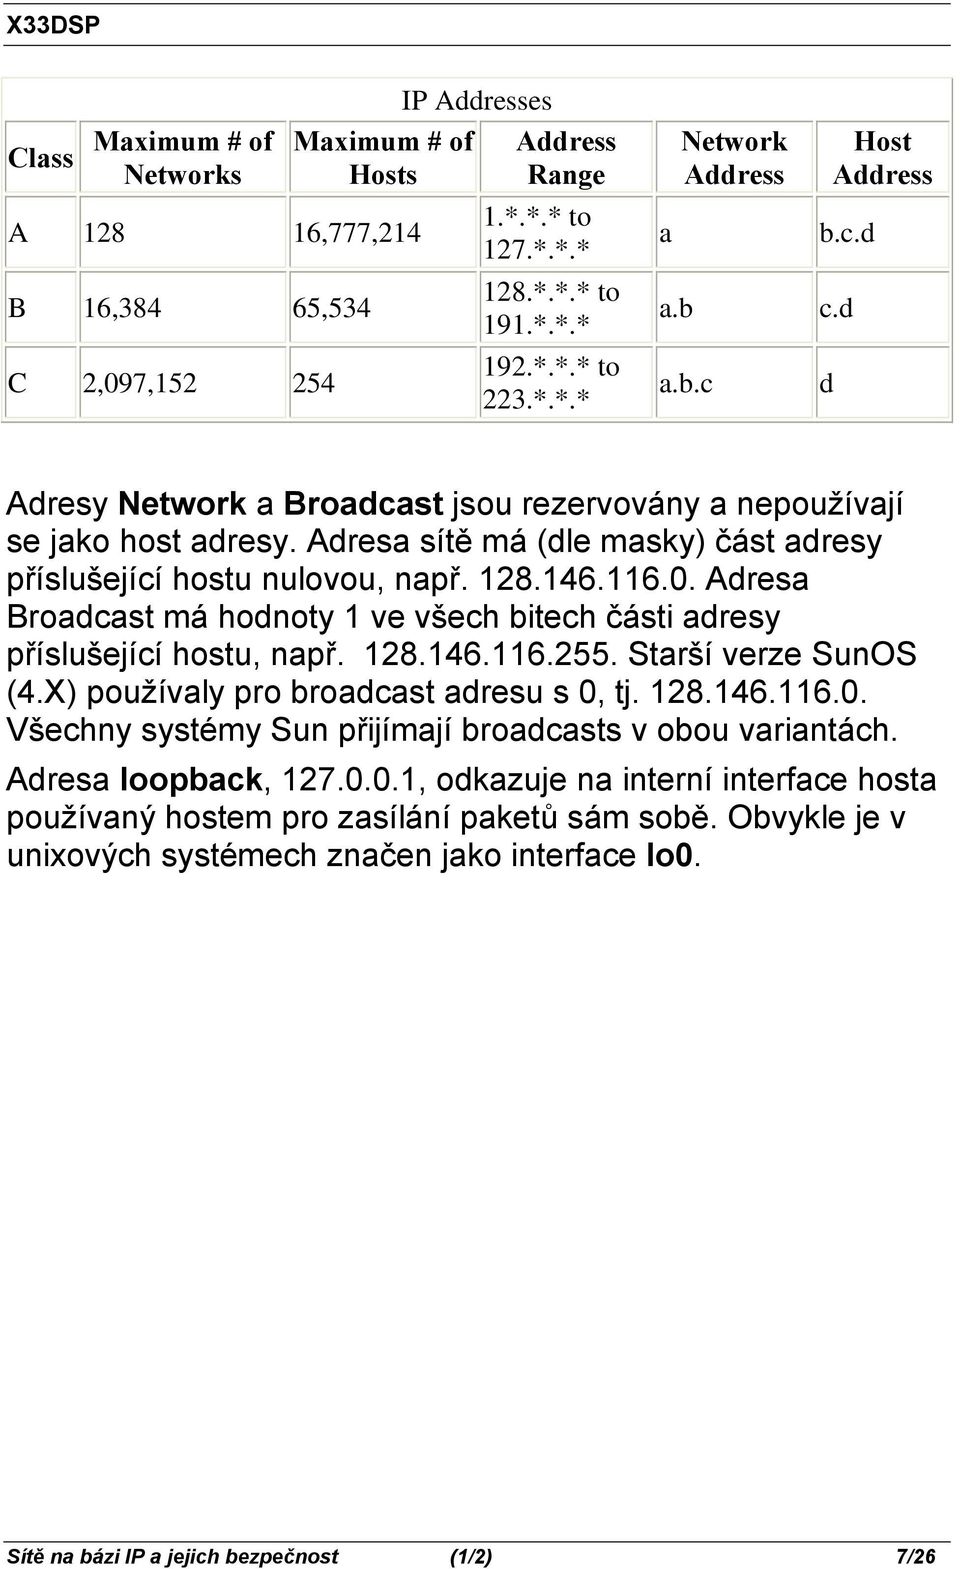 128.146.116.0. Adresa Broadcast má hodnoty 1 ve všech bitech části adresy příslušející hostu, např. 128.146.116.255. Starší verze SunOS (4.X) používaly pro broadcast adresu s 0, tj. 128.146.116.0. Všechny systémy Sun přijímají broadcasts v obou variantách.